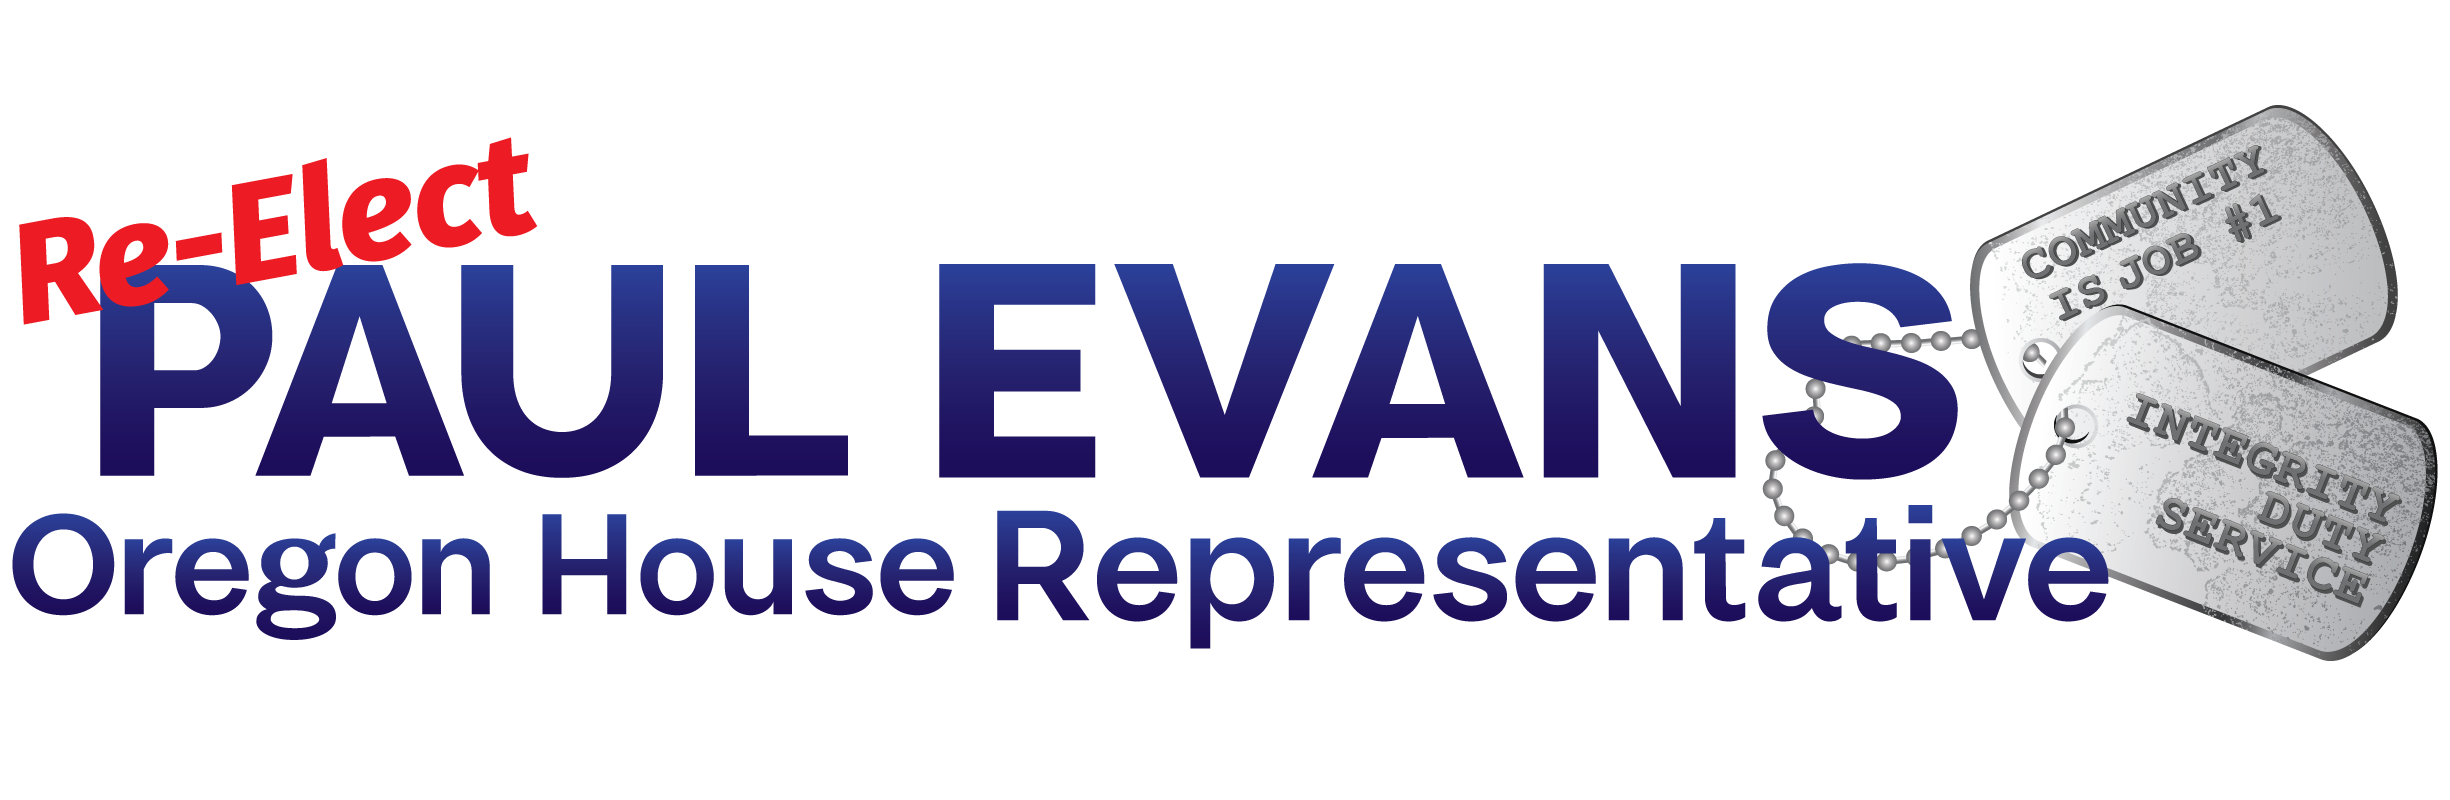 Paul Evans para el Distrito 20 de la Cámara de Representantes